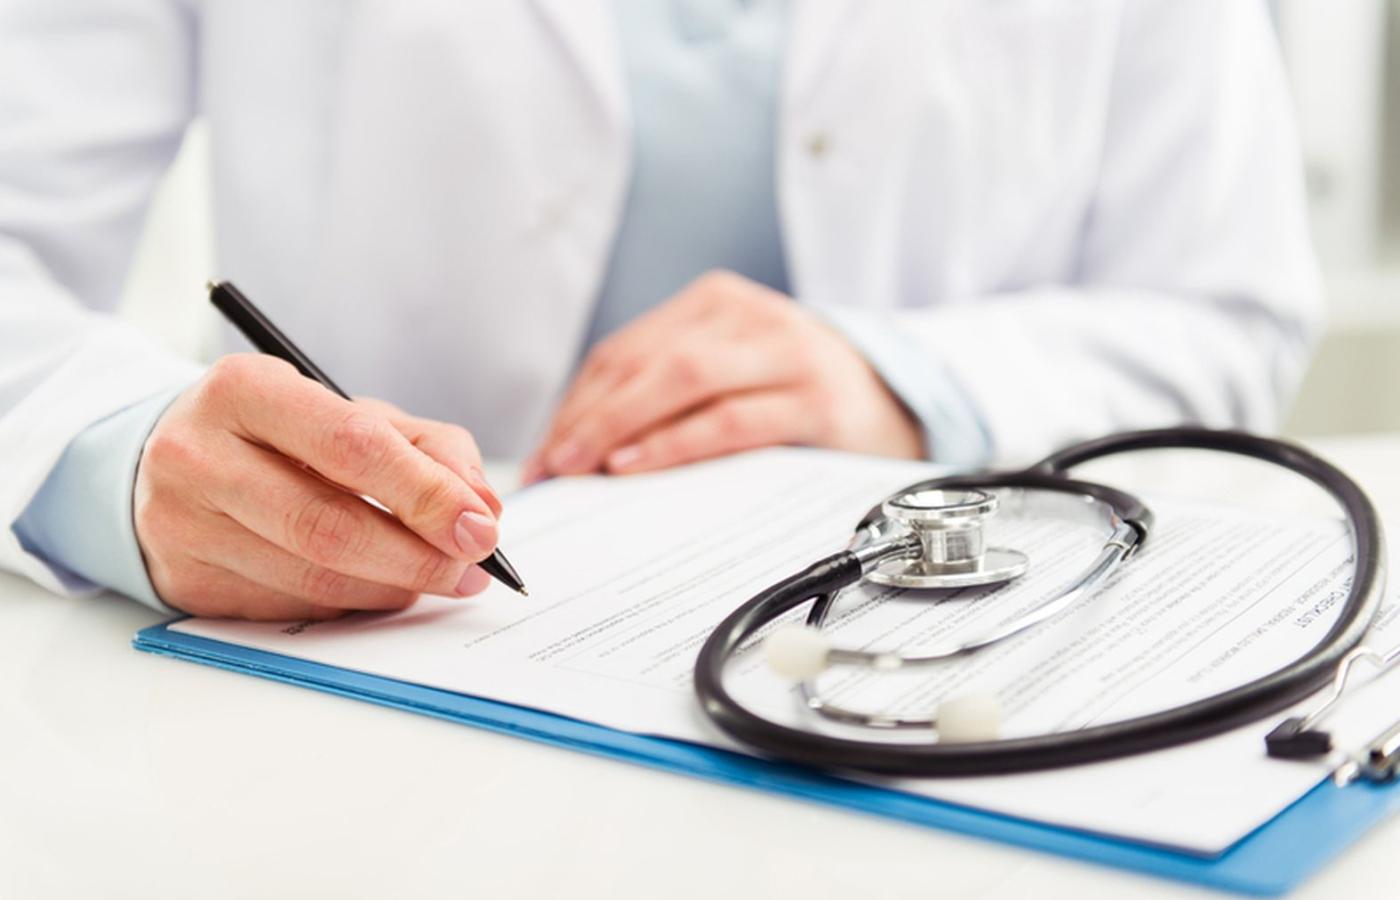 Wielu lekarzy, zwłaszcza starszych, woli zwolnienia wypisywać na papierze.